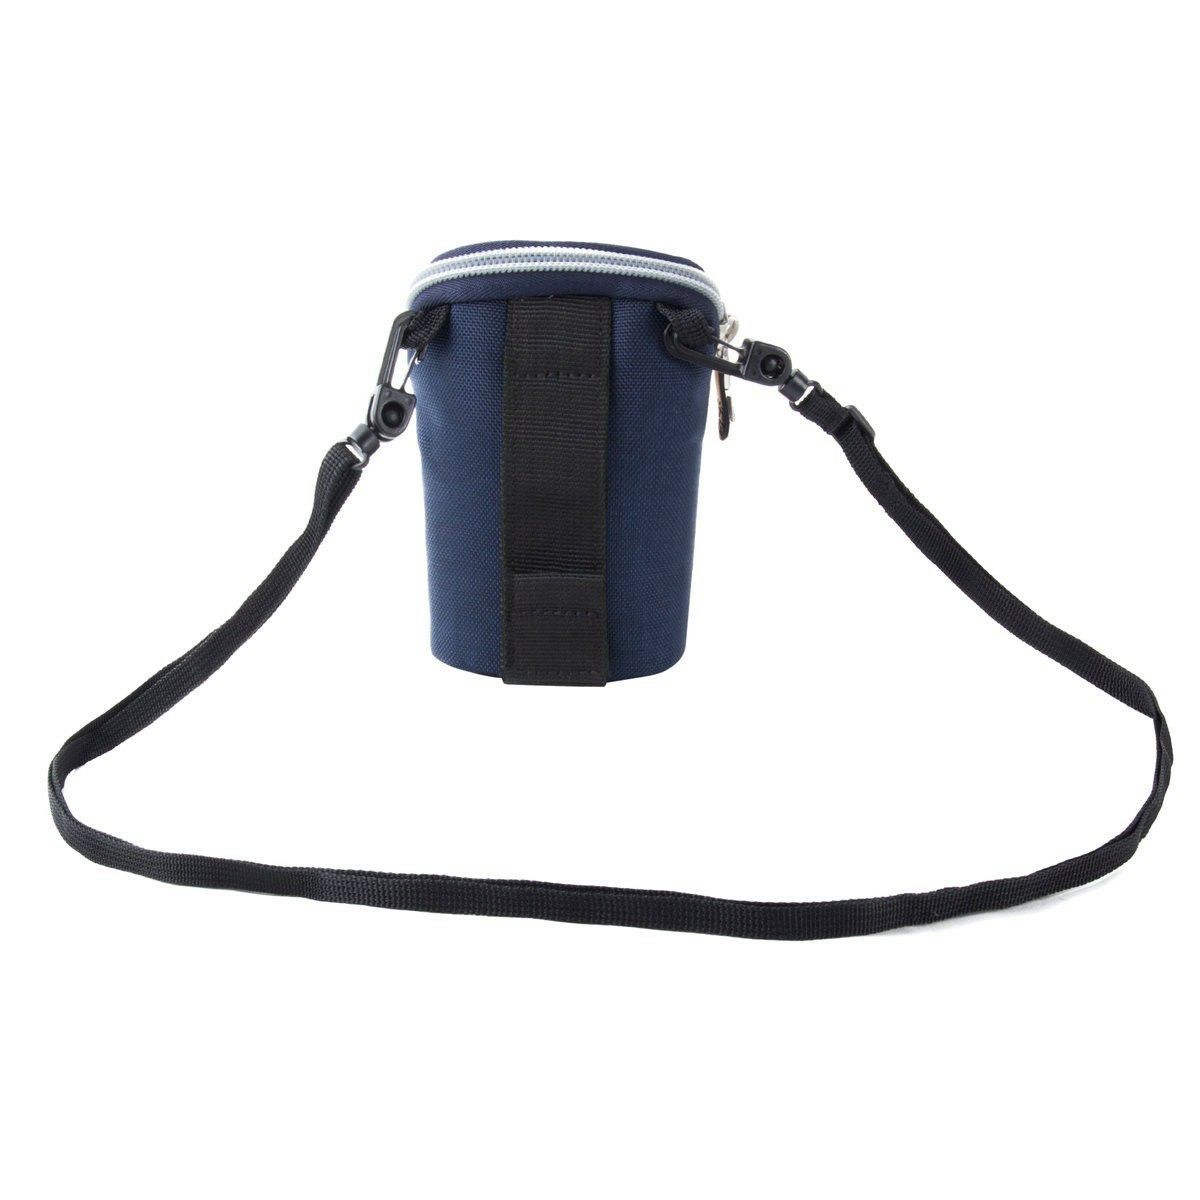 Crumpler Base Layer Camera Pouch S sunday blue copper (BLCP-S-002) plava bakrena torba za fotoaparat